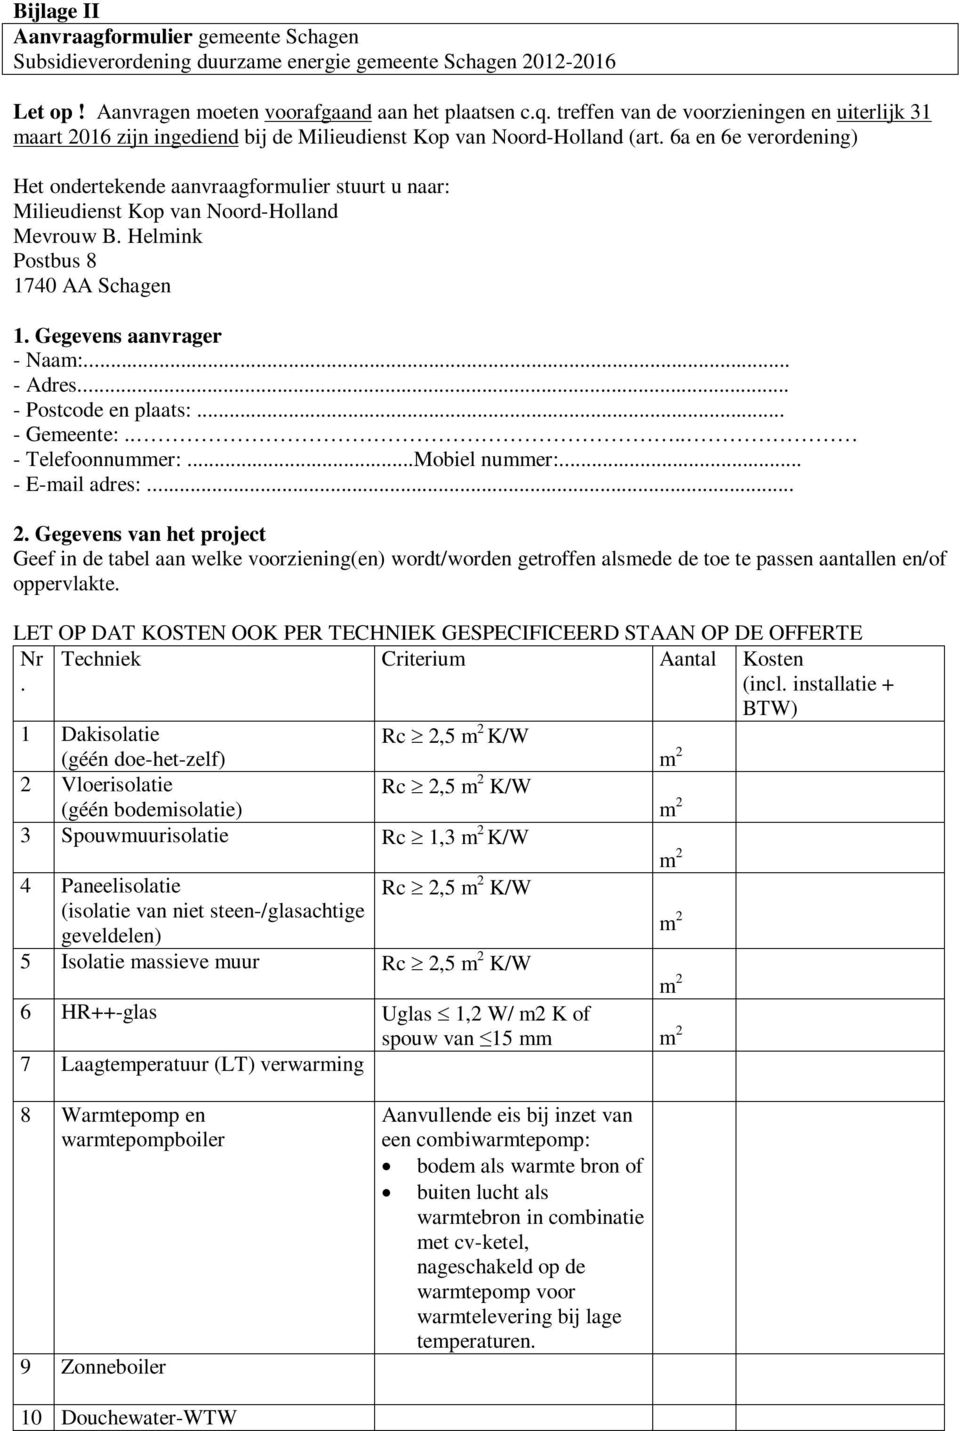 6a en 6e verordening) Het ondertekende aanvraagformulier stuurt u naar: Milieudienst Kop van Noord-Holland Mevrouw B. Helmink Postbus 8 1740 AA Schagen 1. Gegevens aanvrager - Naam:... - Adres.